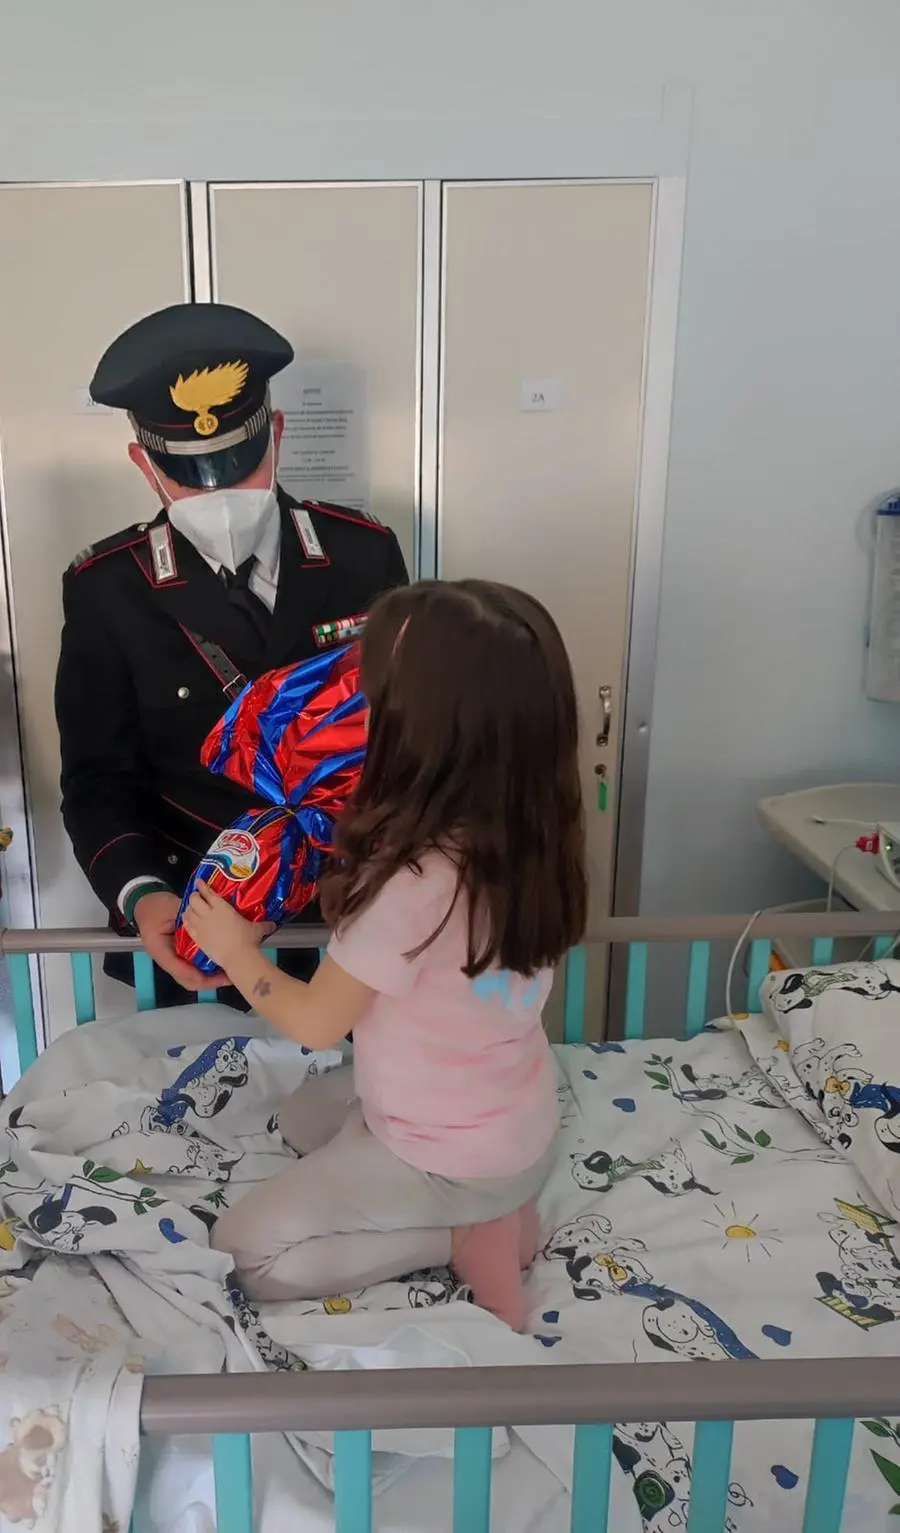 I carabinieri in ospedale con i bambini ricoverati